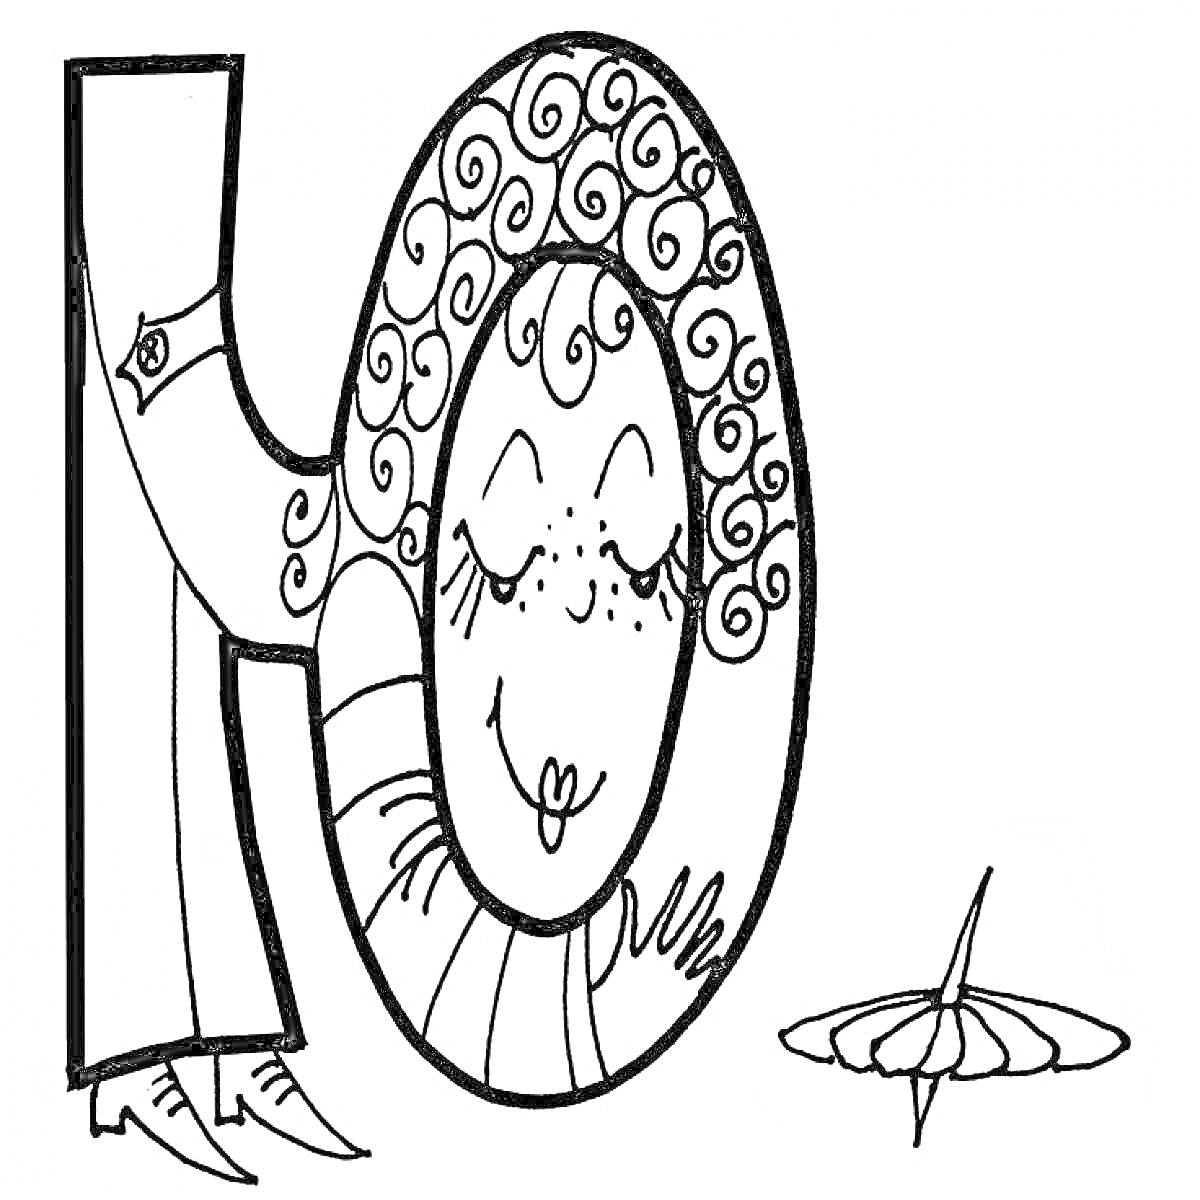 Раскраска Буква Ю с лицом человека и юбкой, рядом волчок